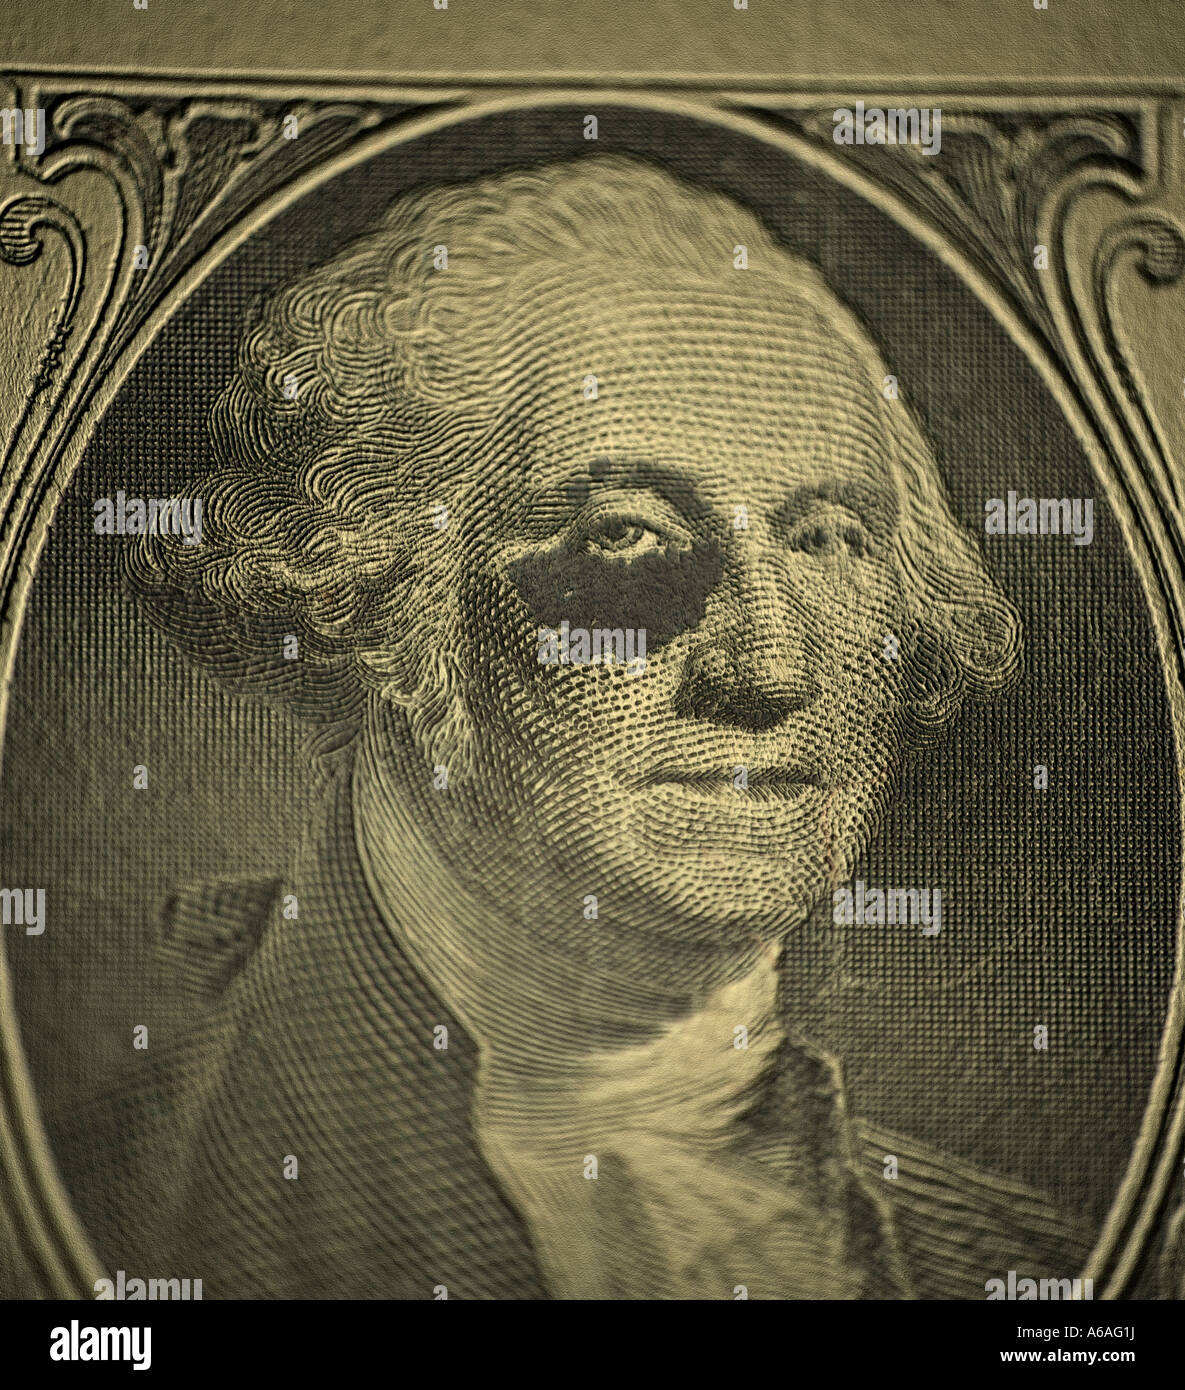 US Dollar George Washington with Black eye Stock Photo